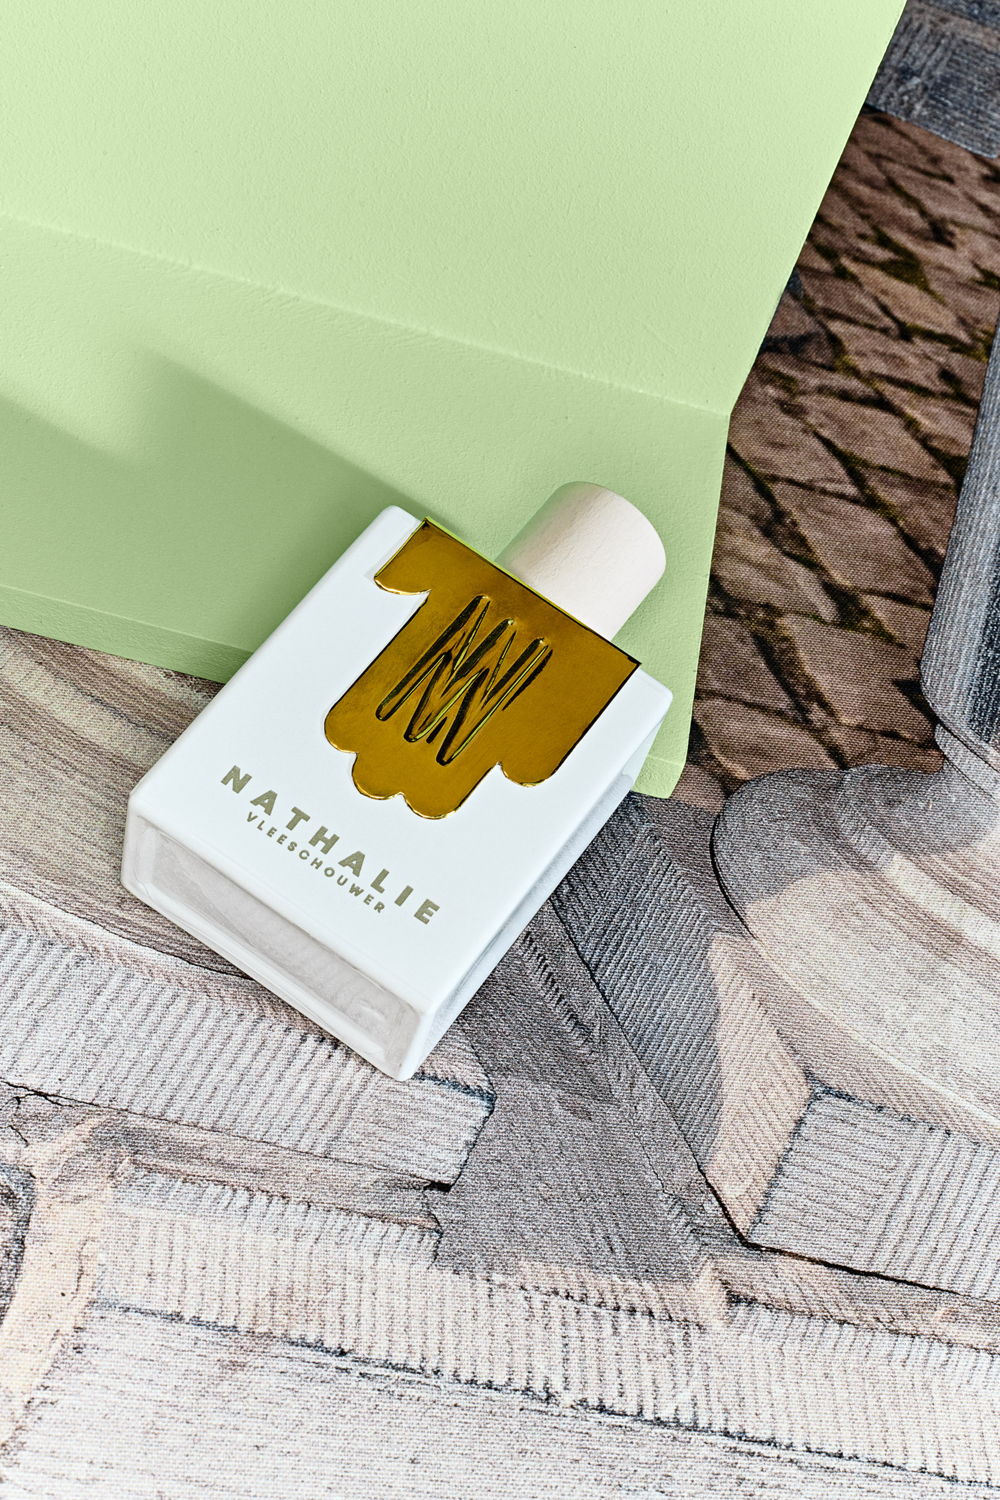 Miglot Fragrance Lab_Nathalie Vleeschouwer